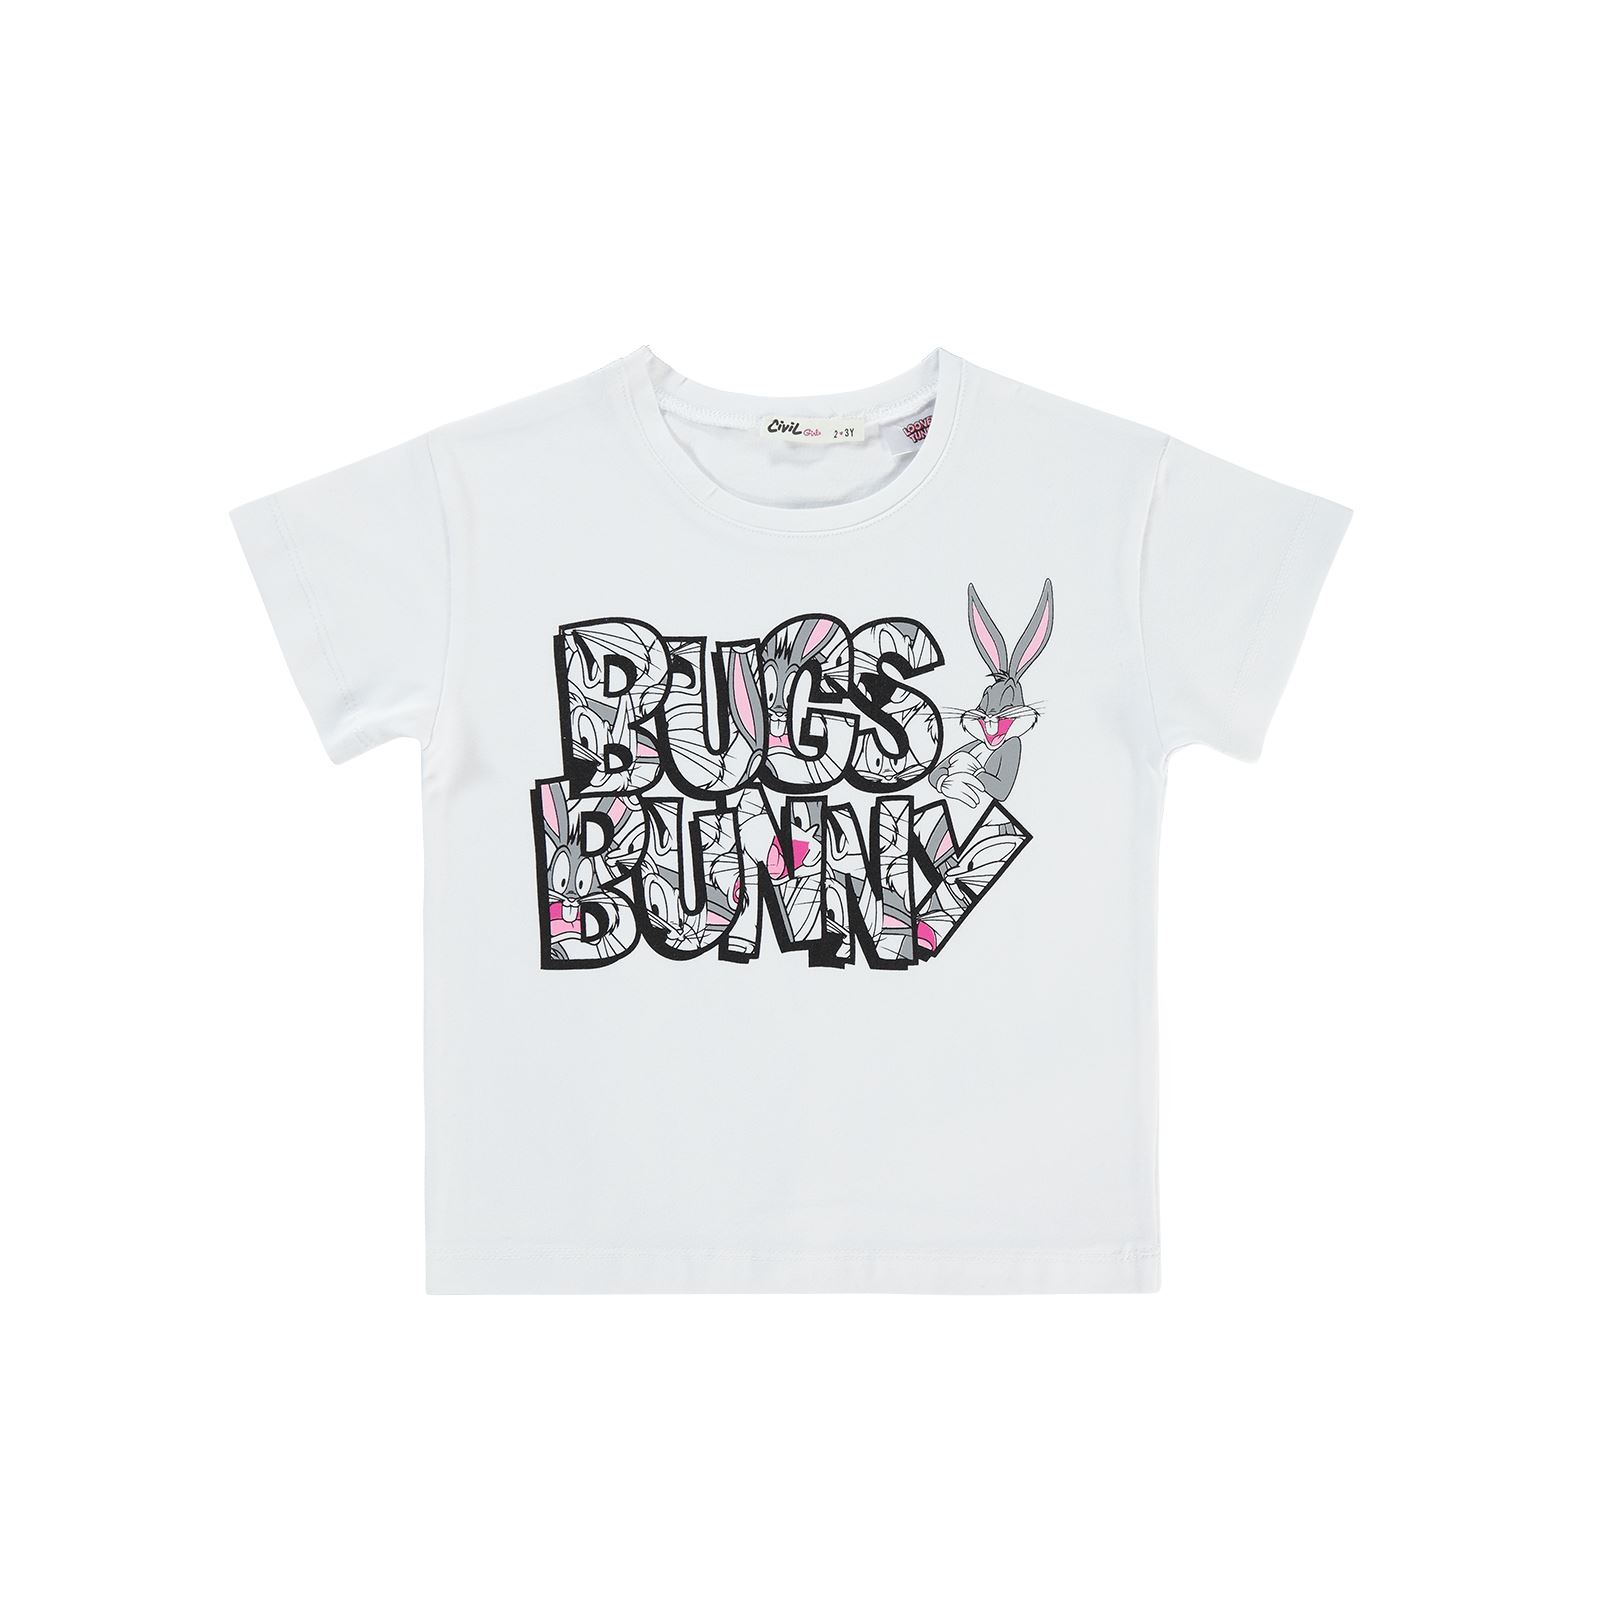 Bugs Bunny Kız Çocuk Tişört 2-5 Yaş Beyaz